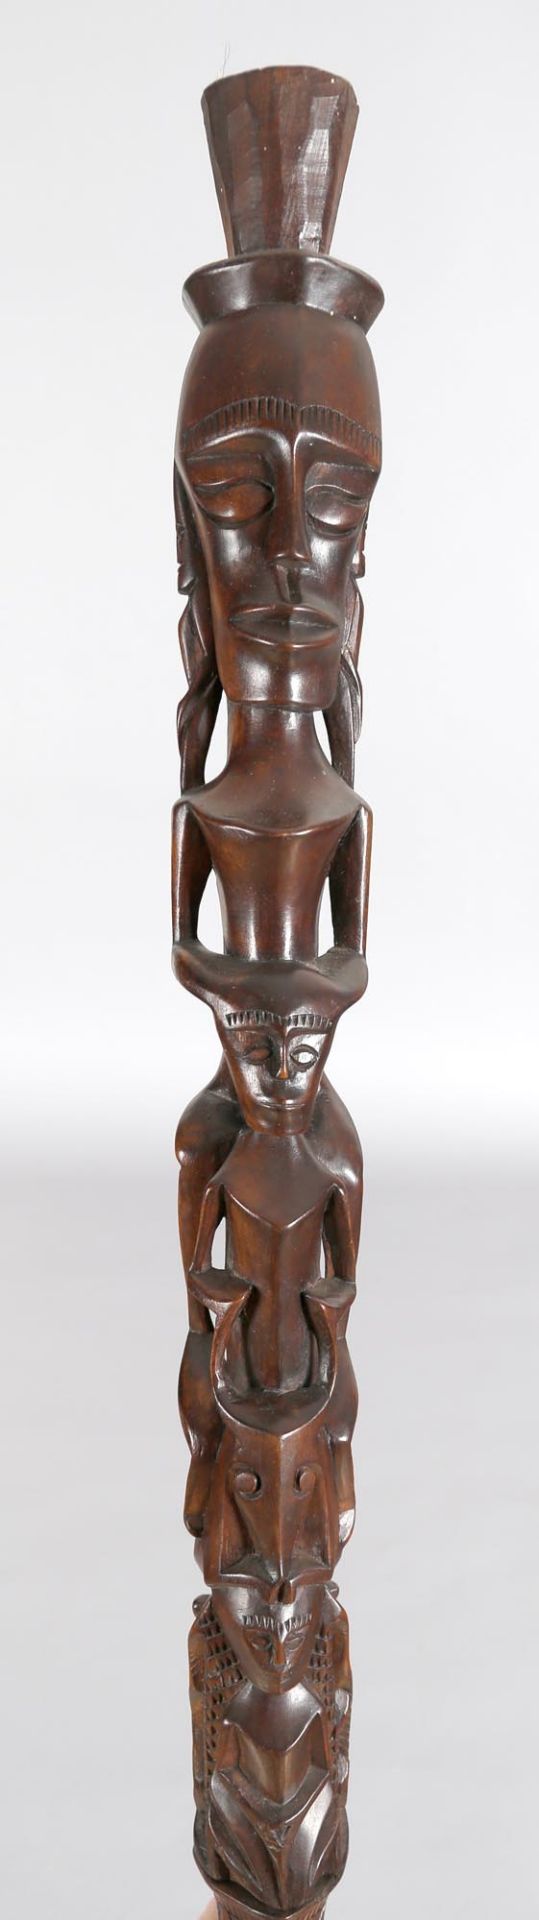 Zweiteiliger Häuptlings- oder Zeremonienstab, afrikanischer Kulturkreis, 20. Jh. - Image 2 of 2